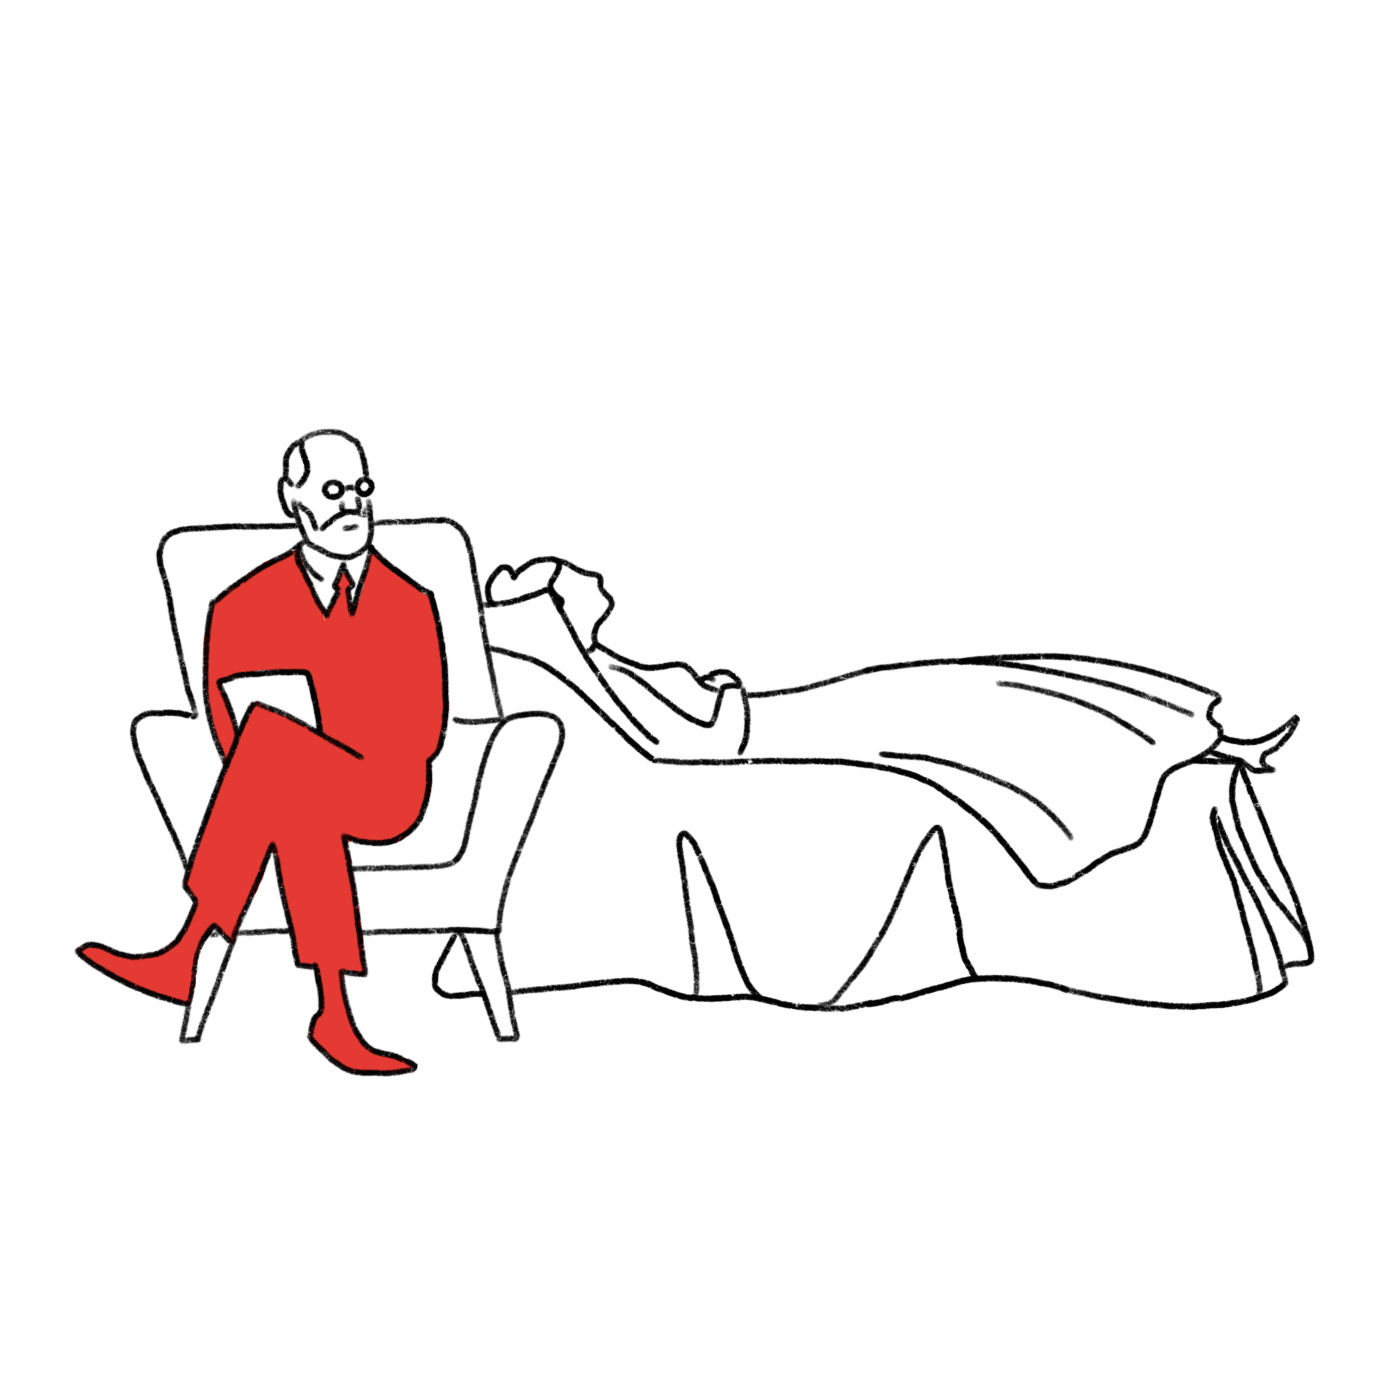 Freud mit Patientin auf der Couch